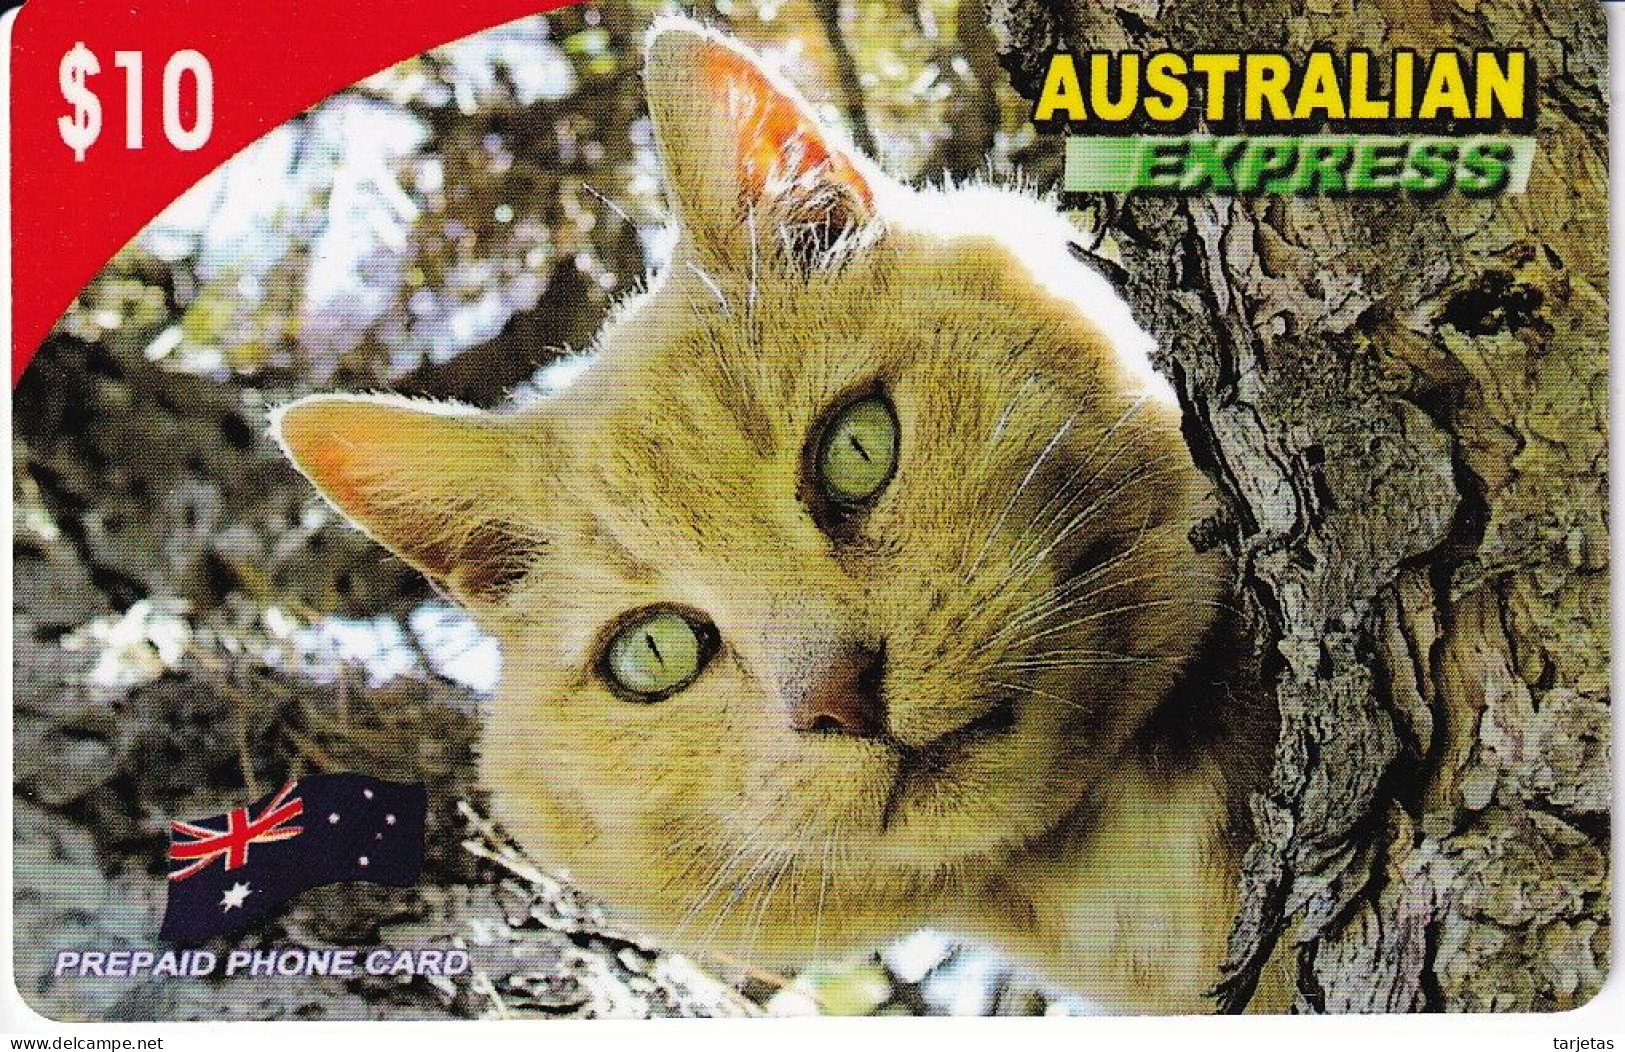 TARJETA DE AUSTRALIA DE UN GATO (CAT) - Katzen